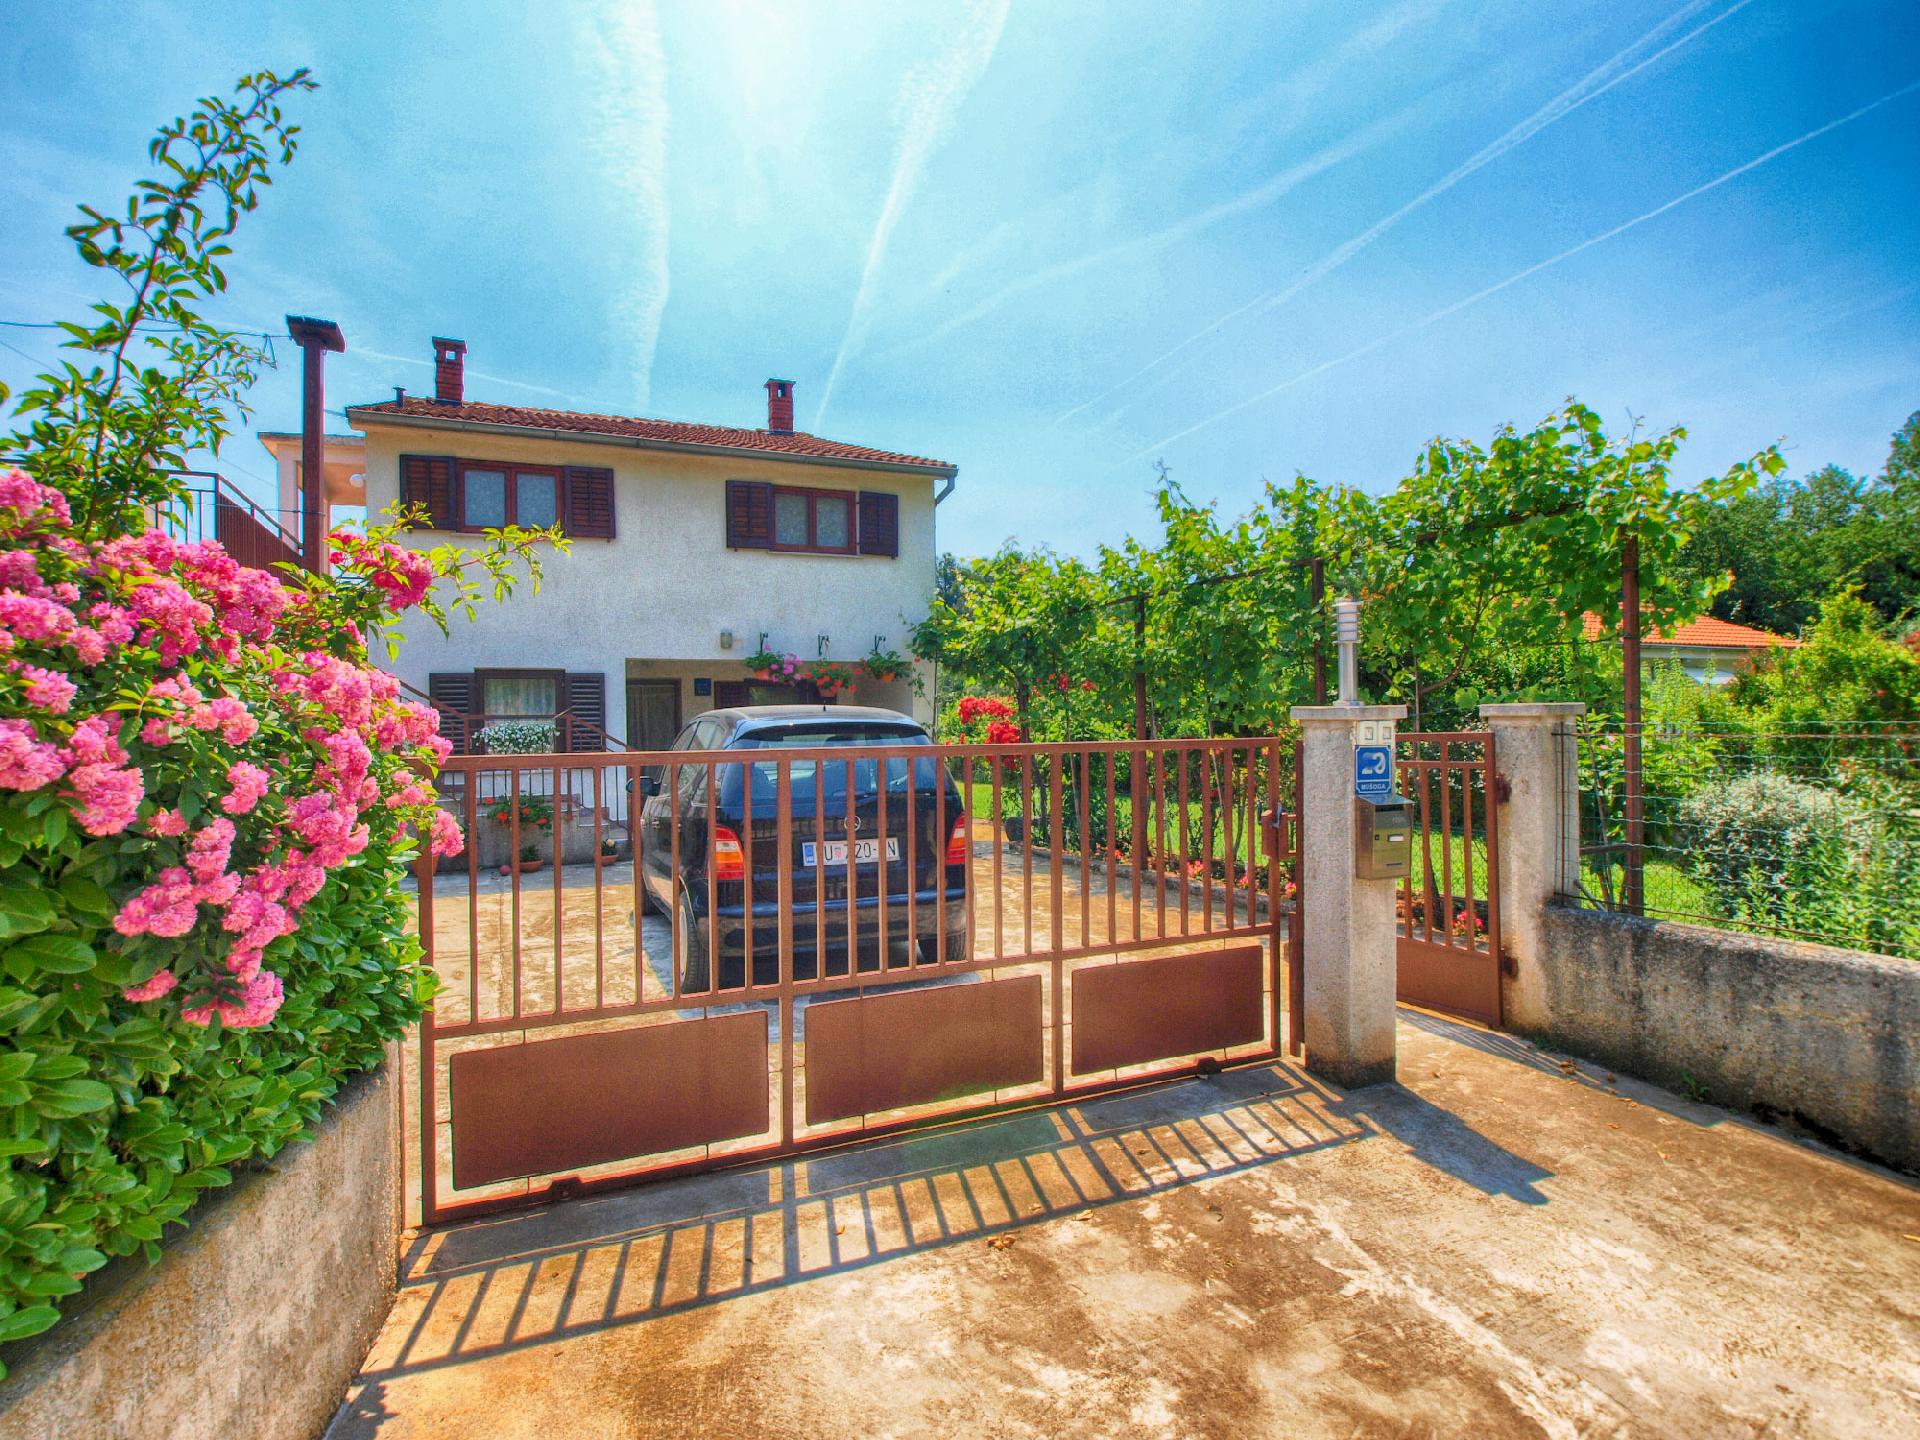 Ferienwohnung für 5 Personen ca. 65 m² i  in Istrien